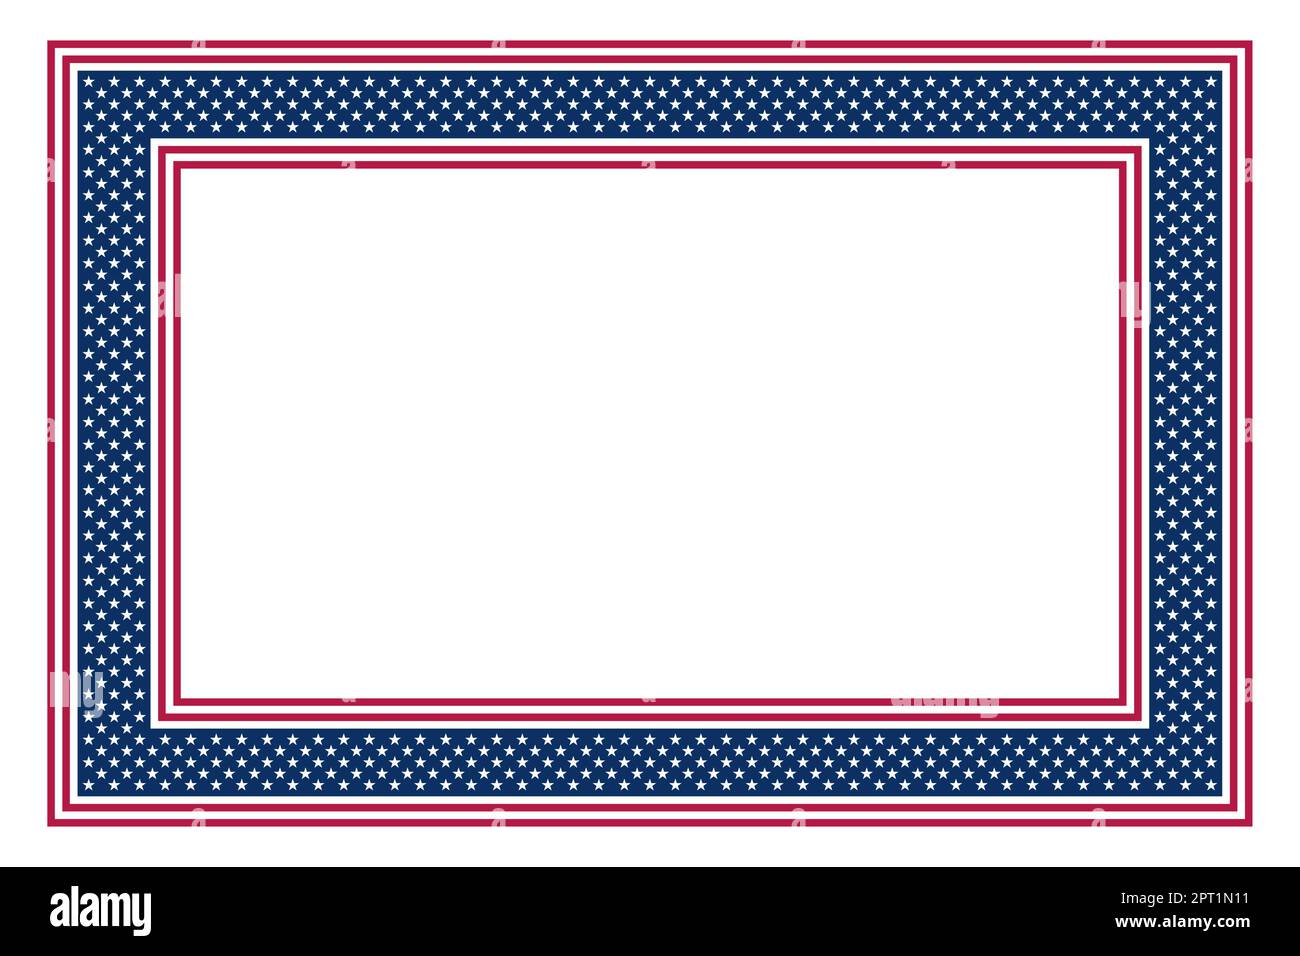 Motif drapeau national des États-Unis, cadre rectangulaire avec motif étoiles et rayures Illustration de Vecteur